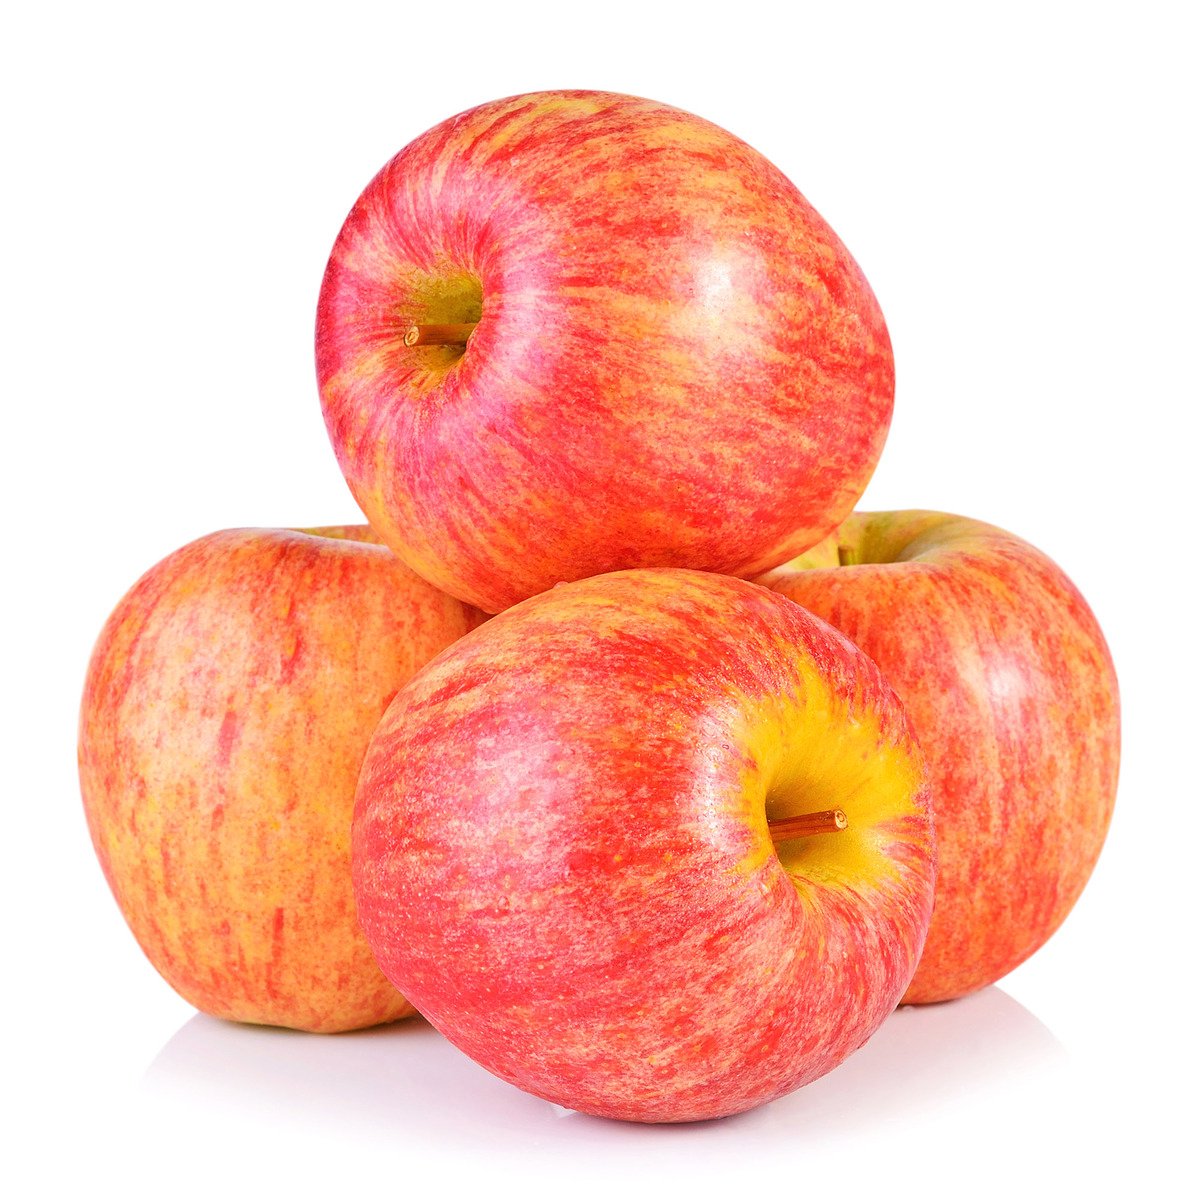 اشتري قم بشراء تفاح رويال جالا فرنسي 1 كجم Online at Best Price من الموقع - من لولو هايبر ماركت Apples في السعودية